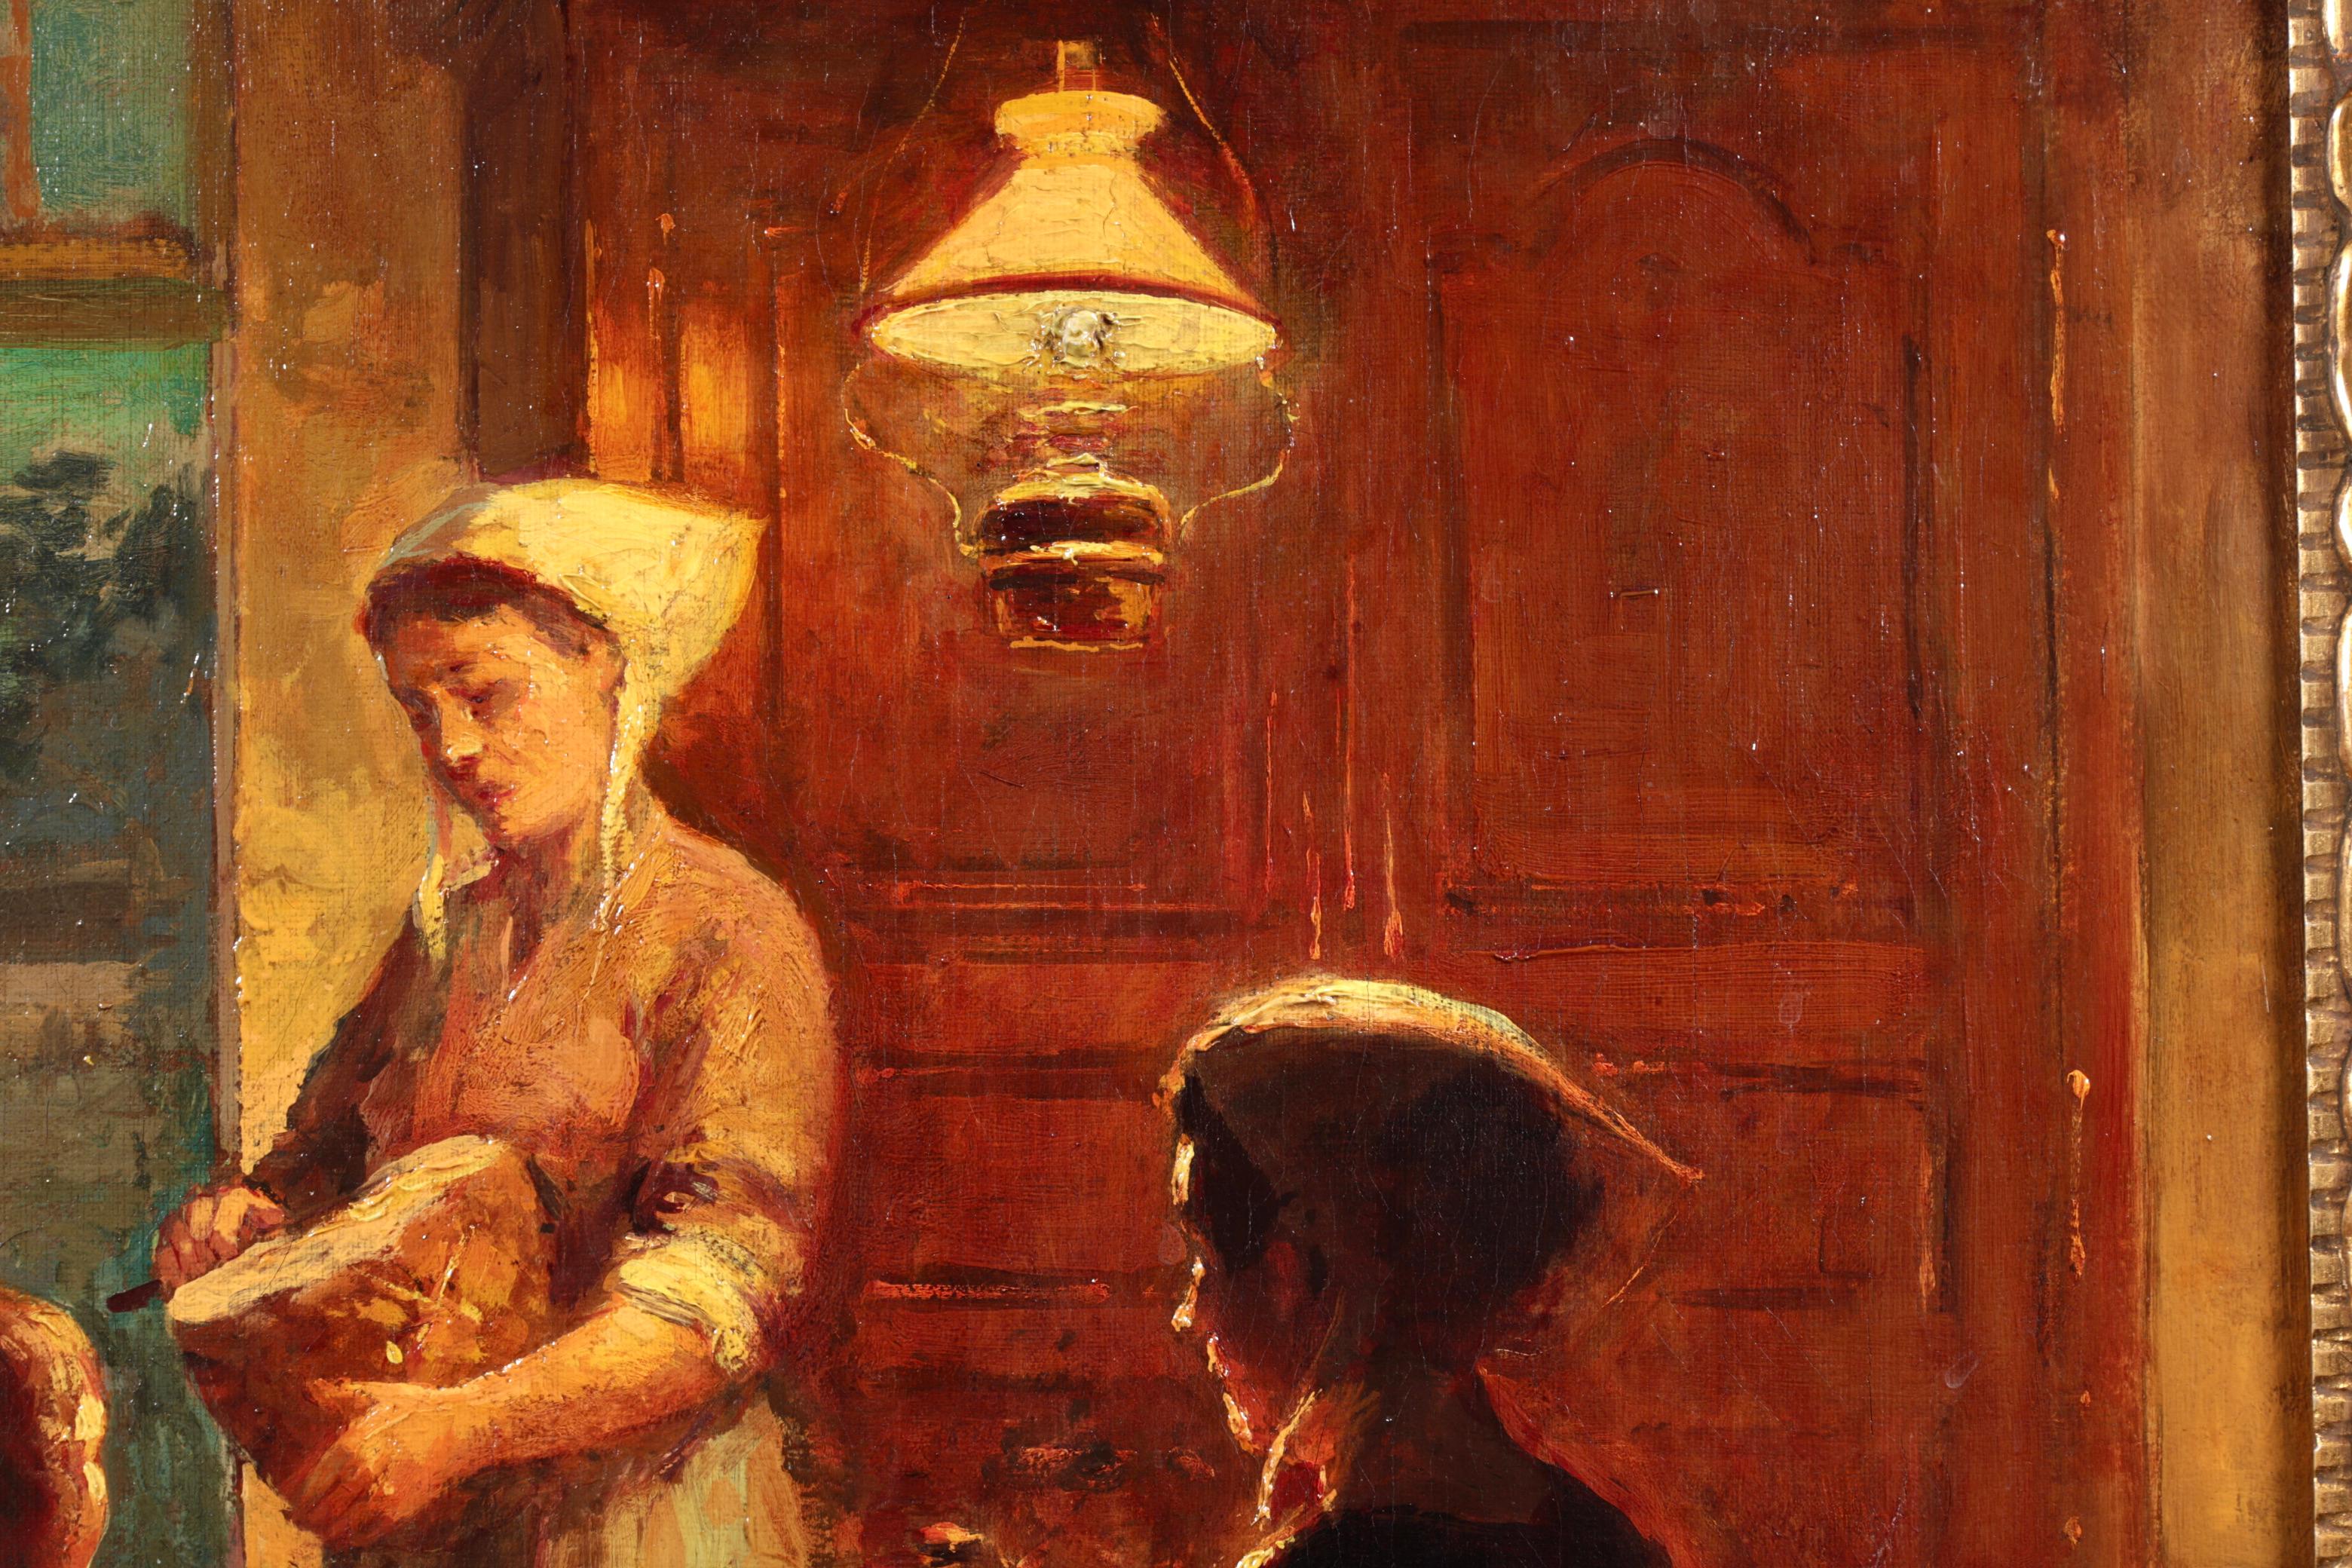 Signierte Figuren in Interieur Öl auf Leinwand um 1925 von gesuchten Französisch impressionistischen Maler Edouard Leon Cortes. Dieses charmante und nostalgische Werk stellt eine Familie in einer typisch bretonischen Küchenszene dar. Eine Frau sitzt